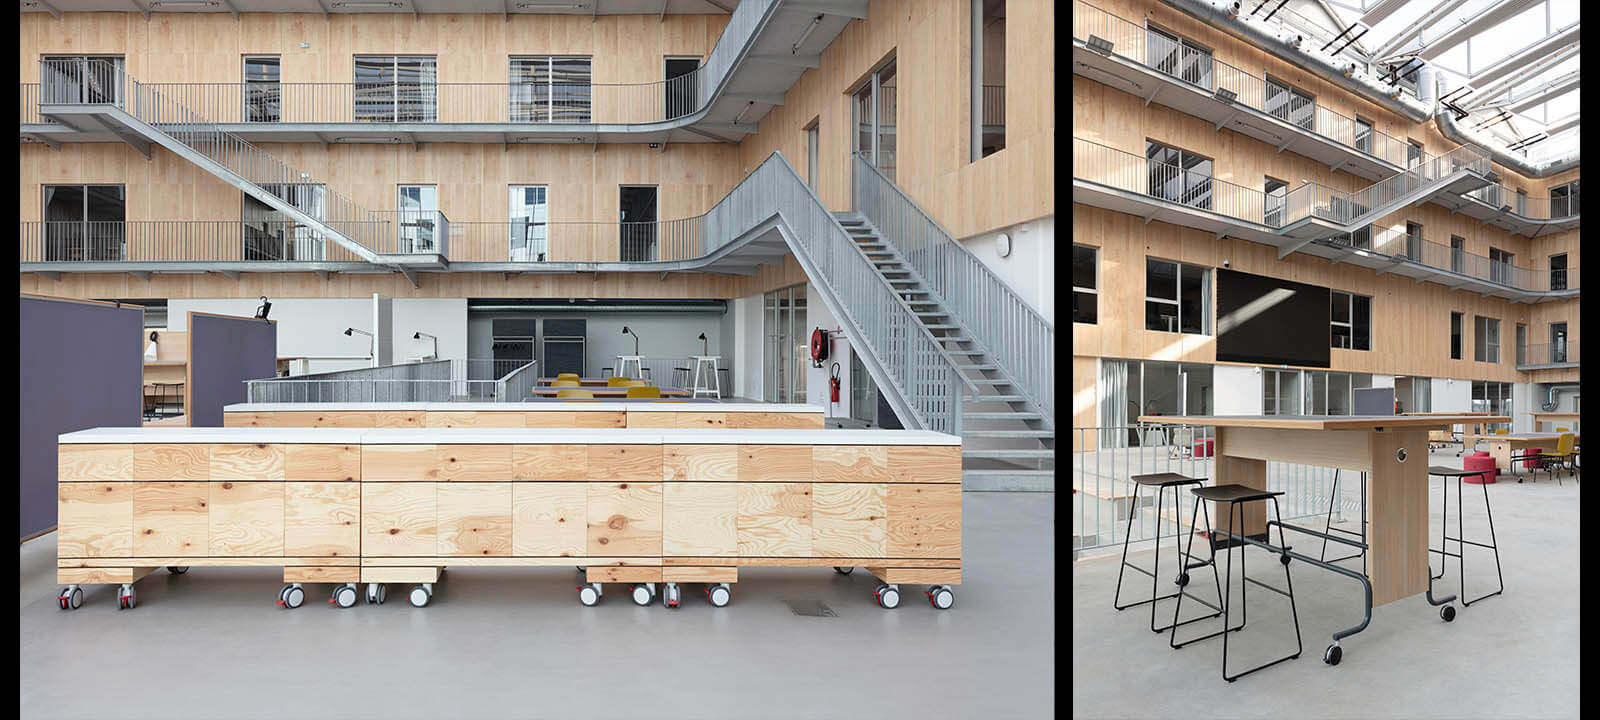 Photographe en architecture de l'agora école de design de nantes atlantique pour IDM par Gwenaelle Hoyet